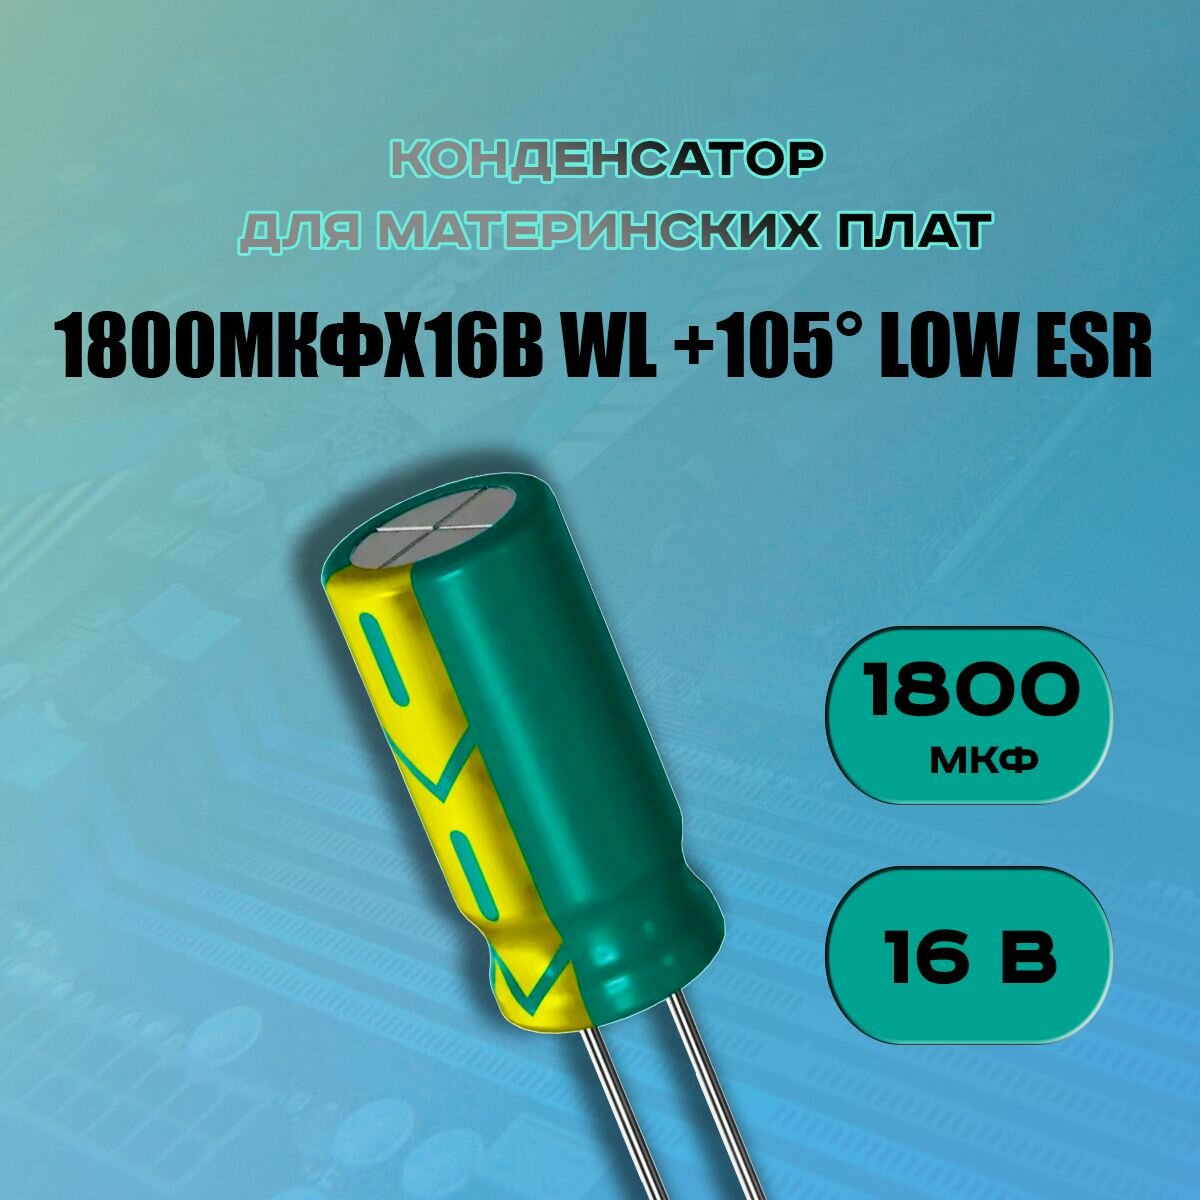 Конденсатор для материнской платы 1800 микрофарат 16 Вольт (1800uf 16V WL +105 LOW ESR) - 1 шт.